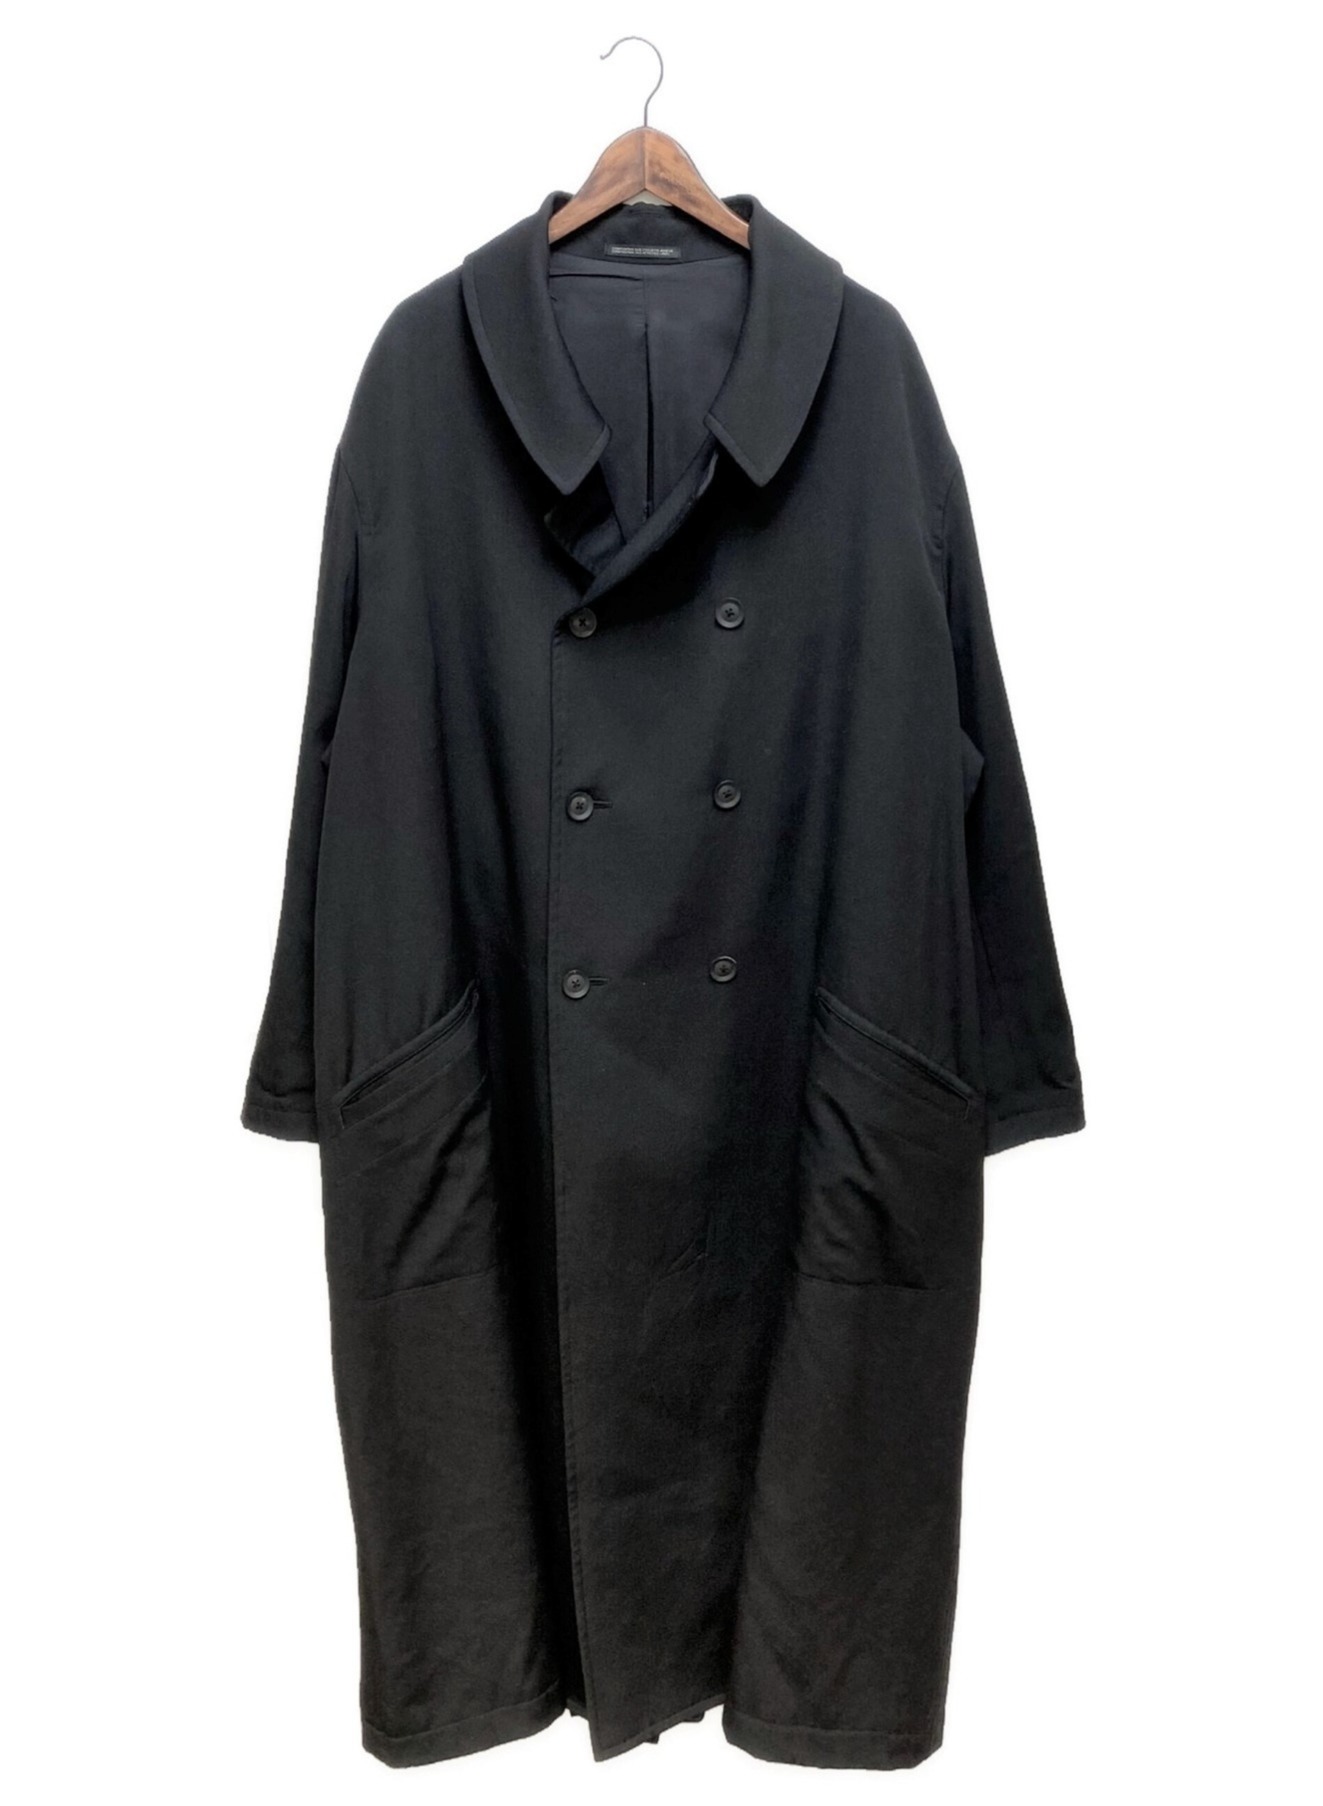 Yohji Yamamoto pour homme (ヨウジヤマモトプールオム) 21AW ステンカラービッグコート ブラック サイズ:1